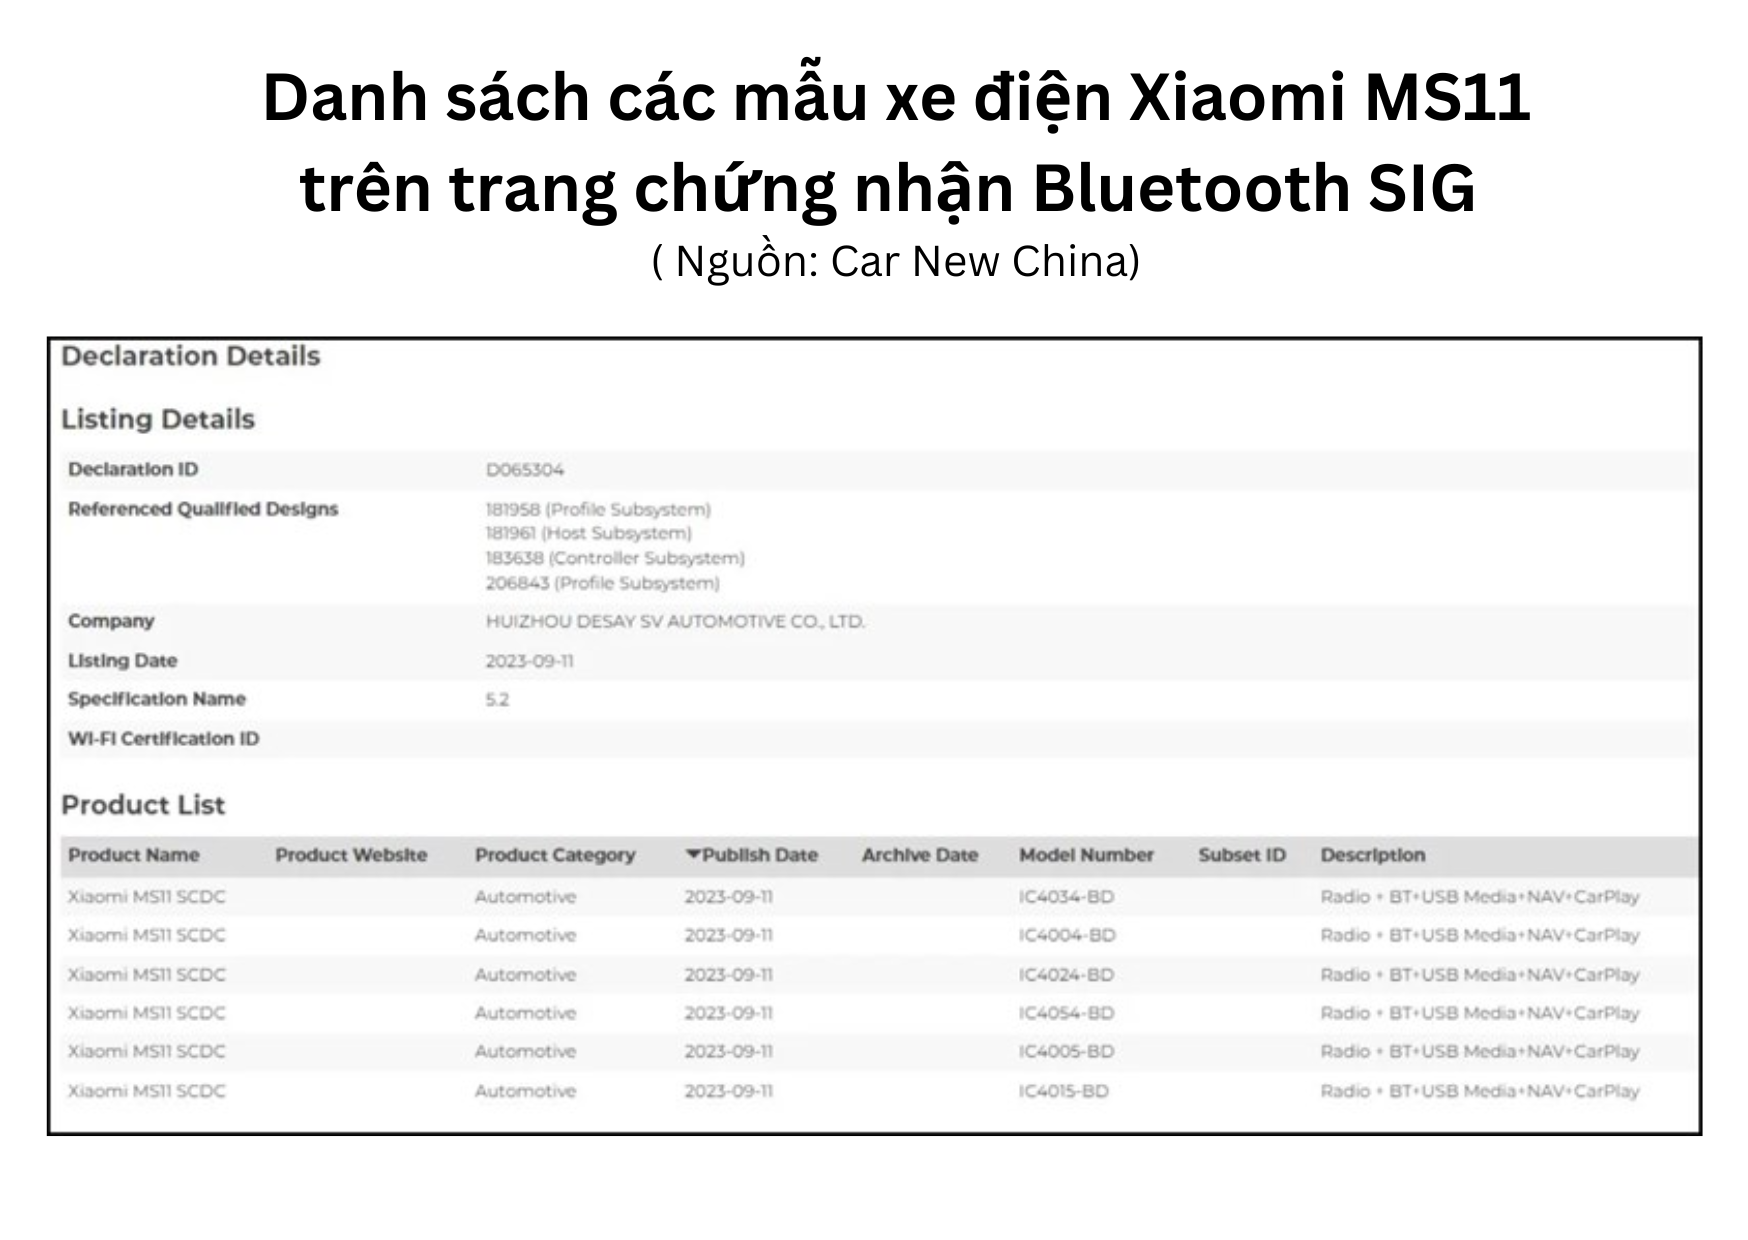 Danh sách các mẫu xe điện Xiaomi MS11 trên trang chứng nhận Bluetooth SIG